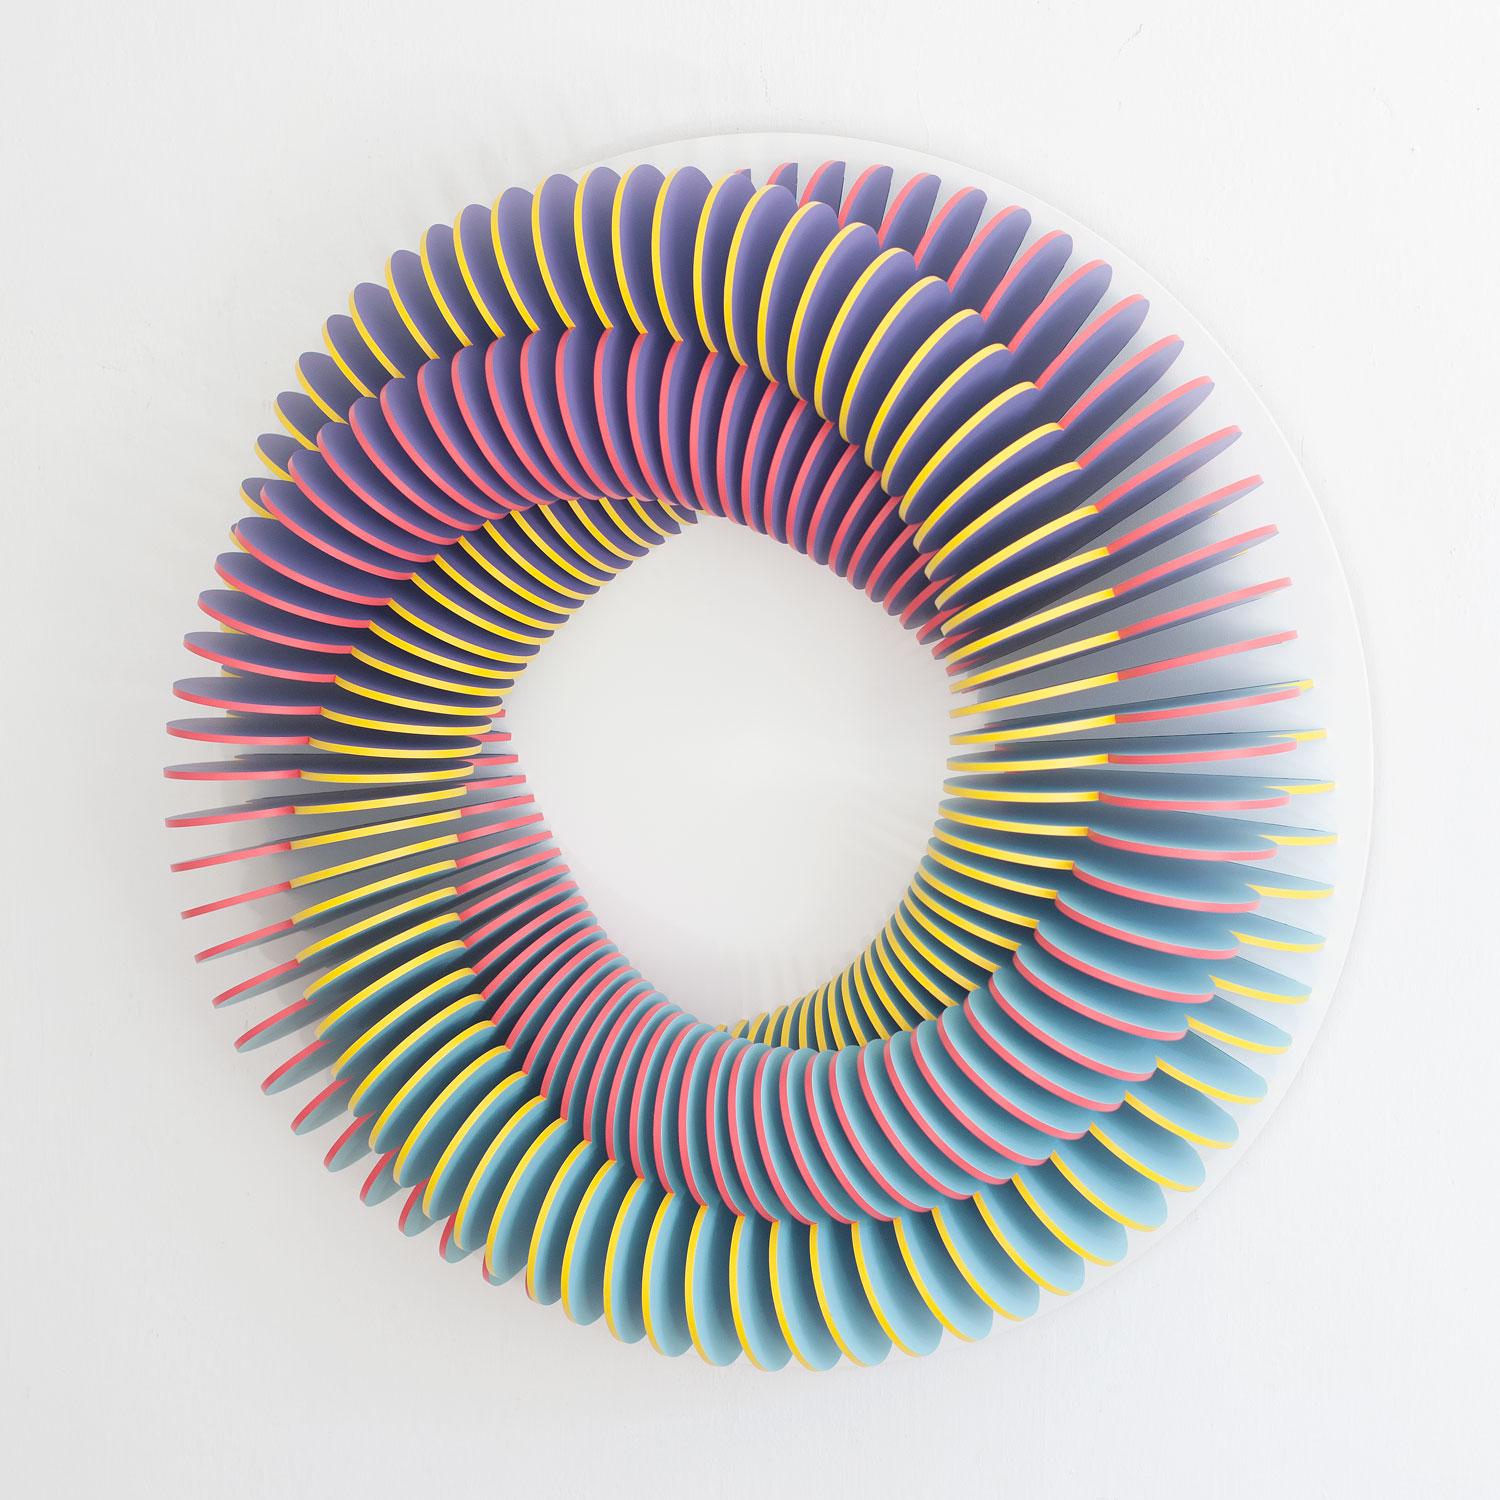 Anna Kruhelska Abstract Sculpture - CC 103 - Pink yellow blue abstract geometric 3D wall circular sculpture